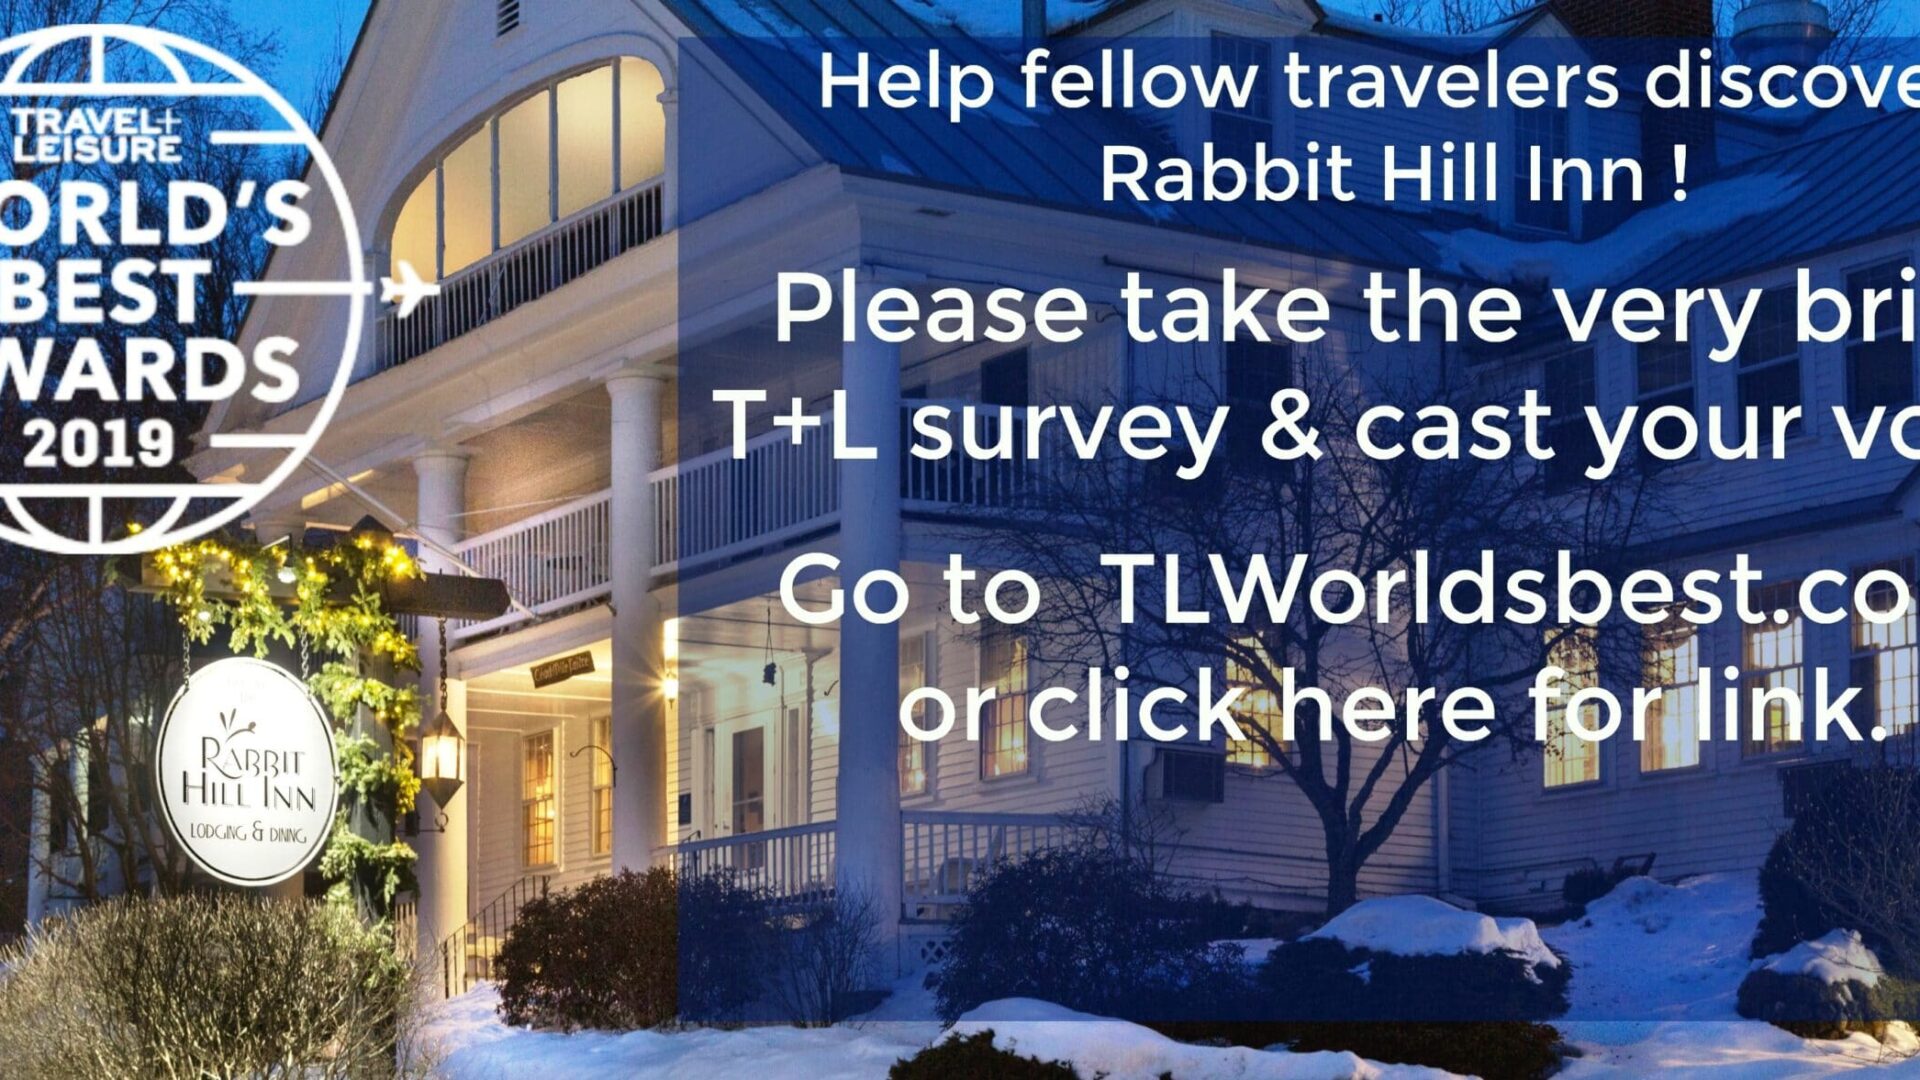 |T+L Travel Survey|